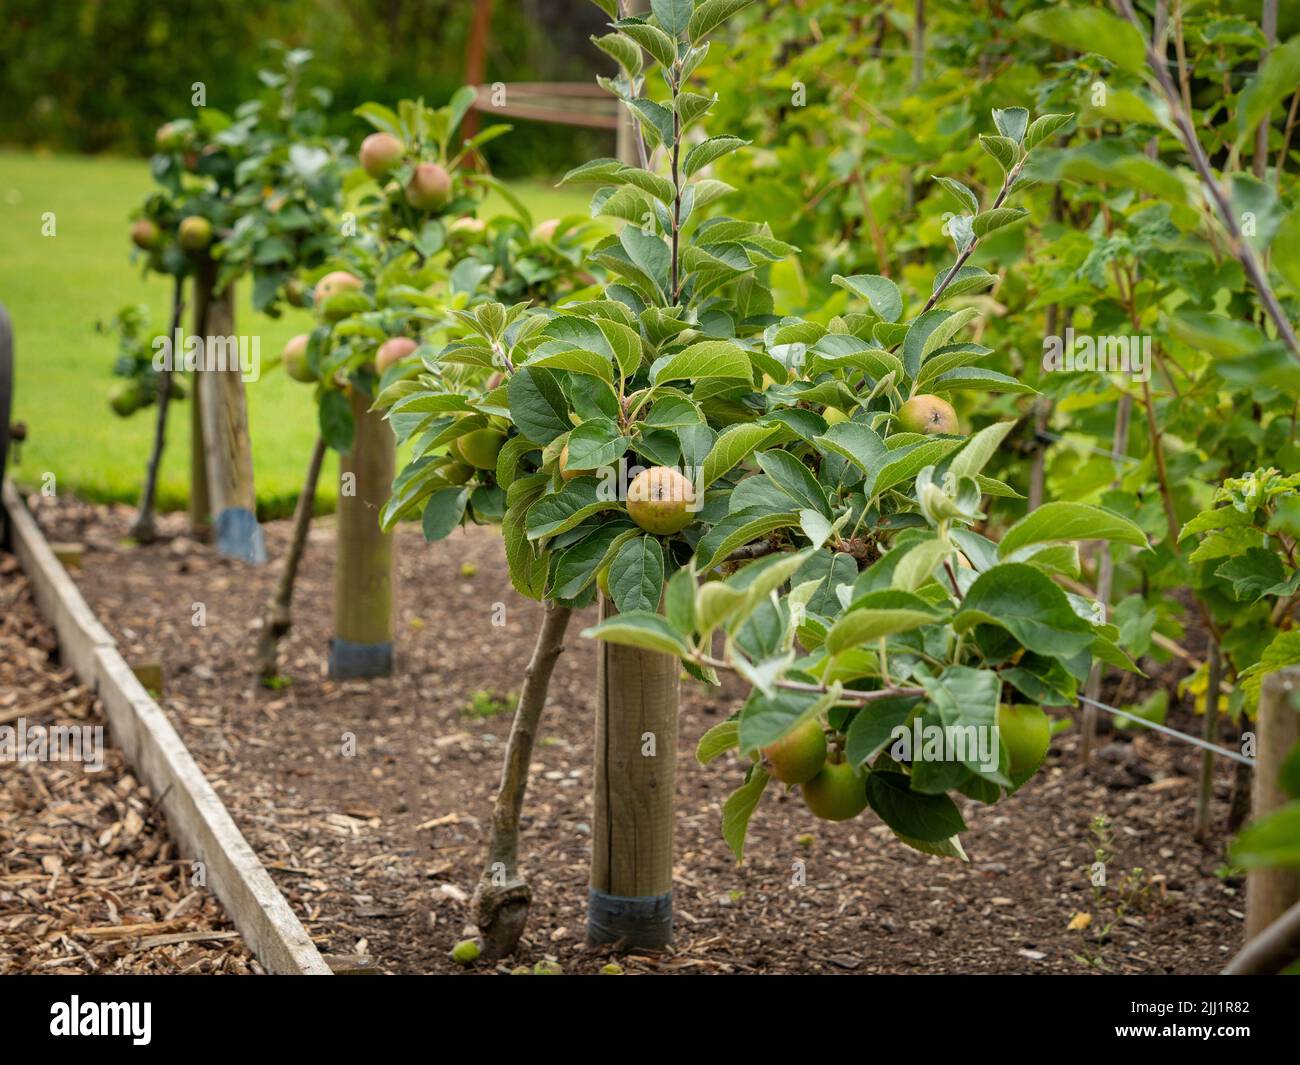 El cordón horizontal entrenó a los manzanos, comúnmente llamados manzanas de estofado, que crecen en un jardín del Reino Unido Foto de stock